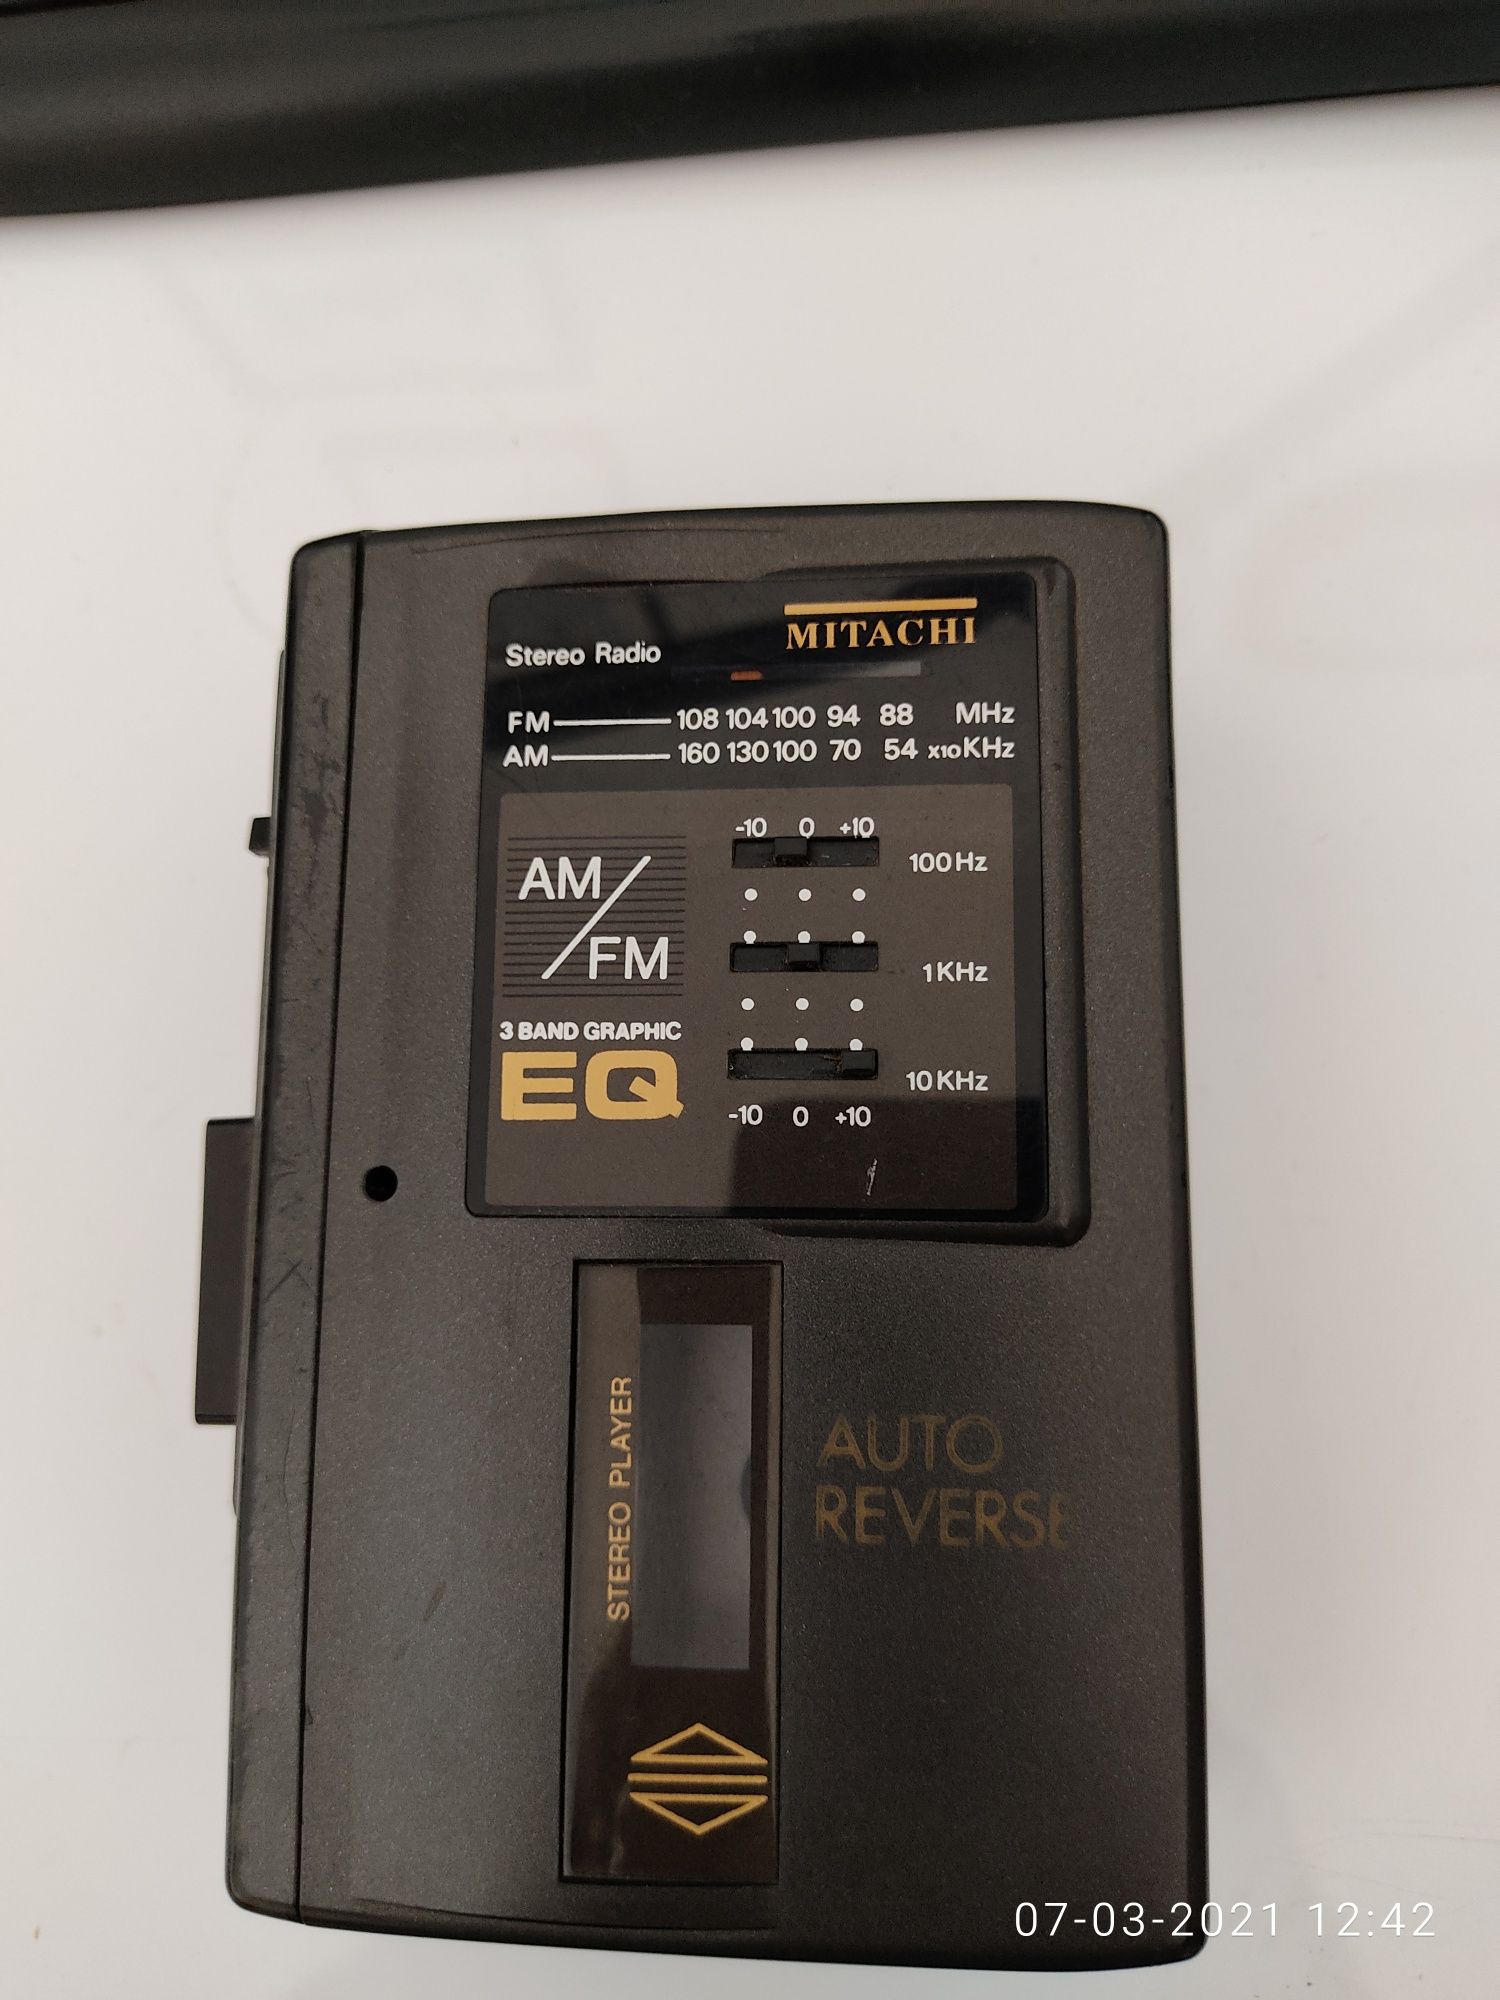 Walkman Mitachi com rádio e cassete autoreverse